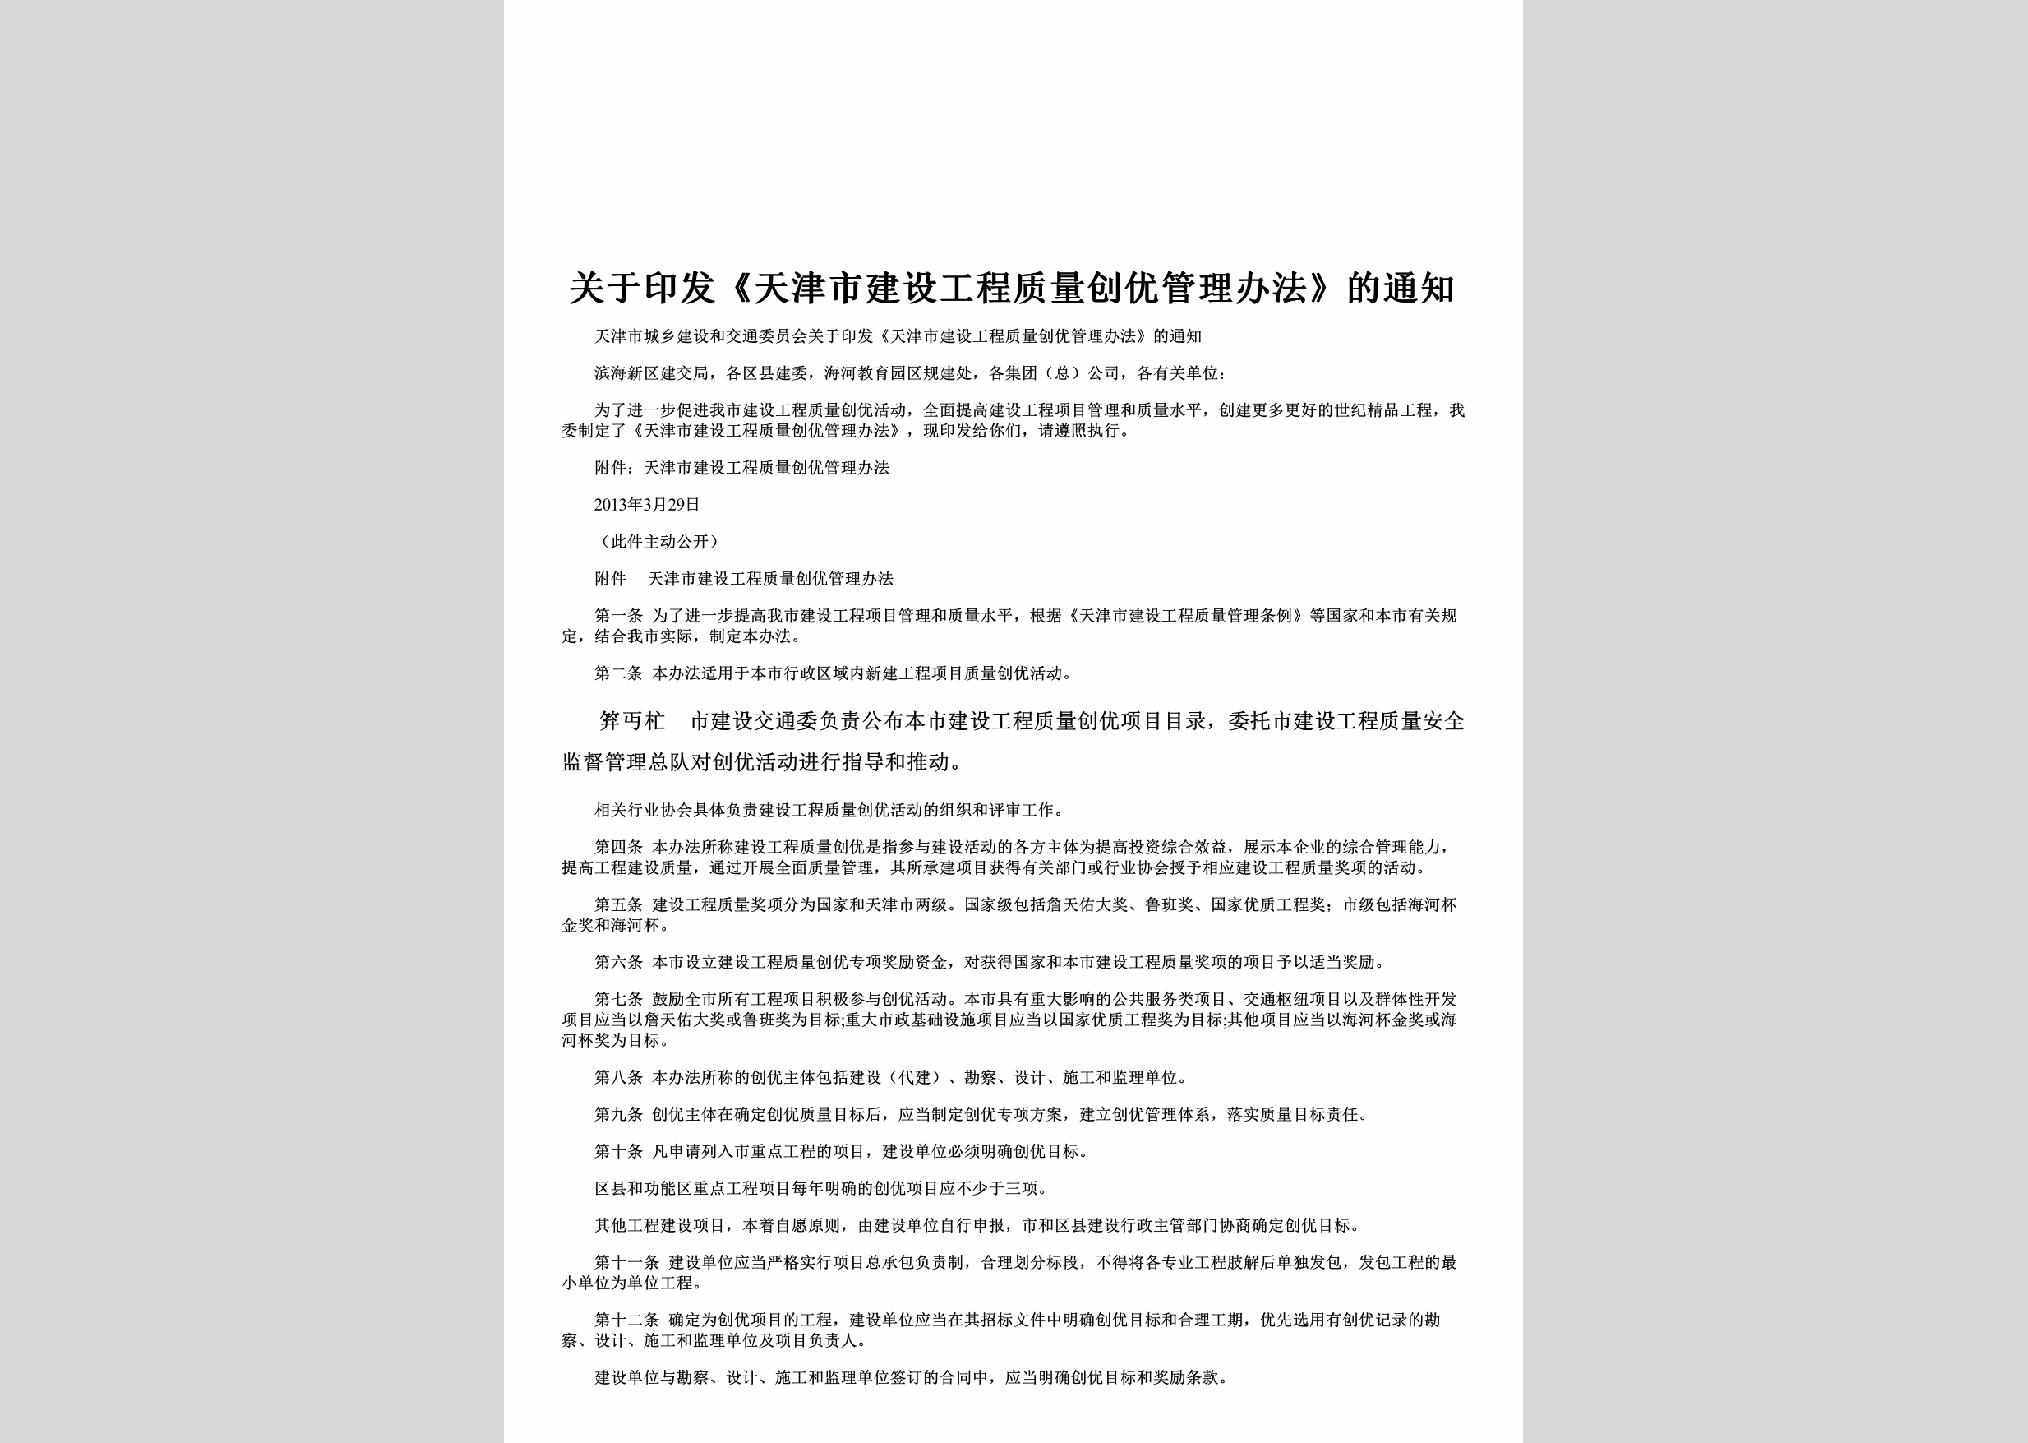 TJ-JSGCZLC-2013：关于印发《天津市建设工程质量创优管理办法》的通知